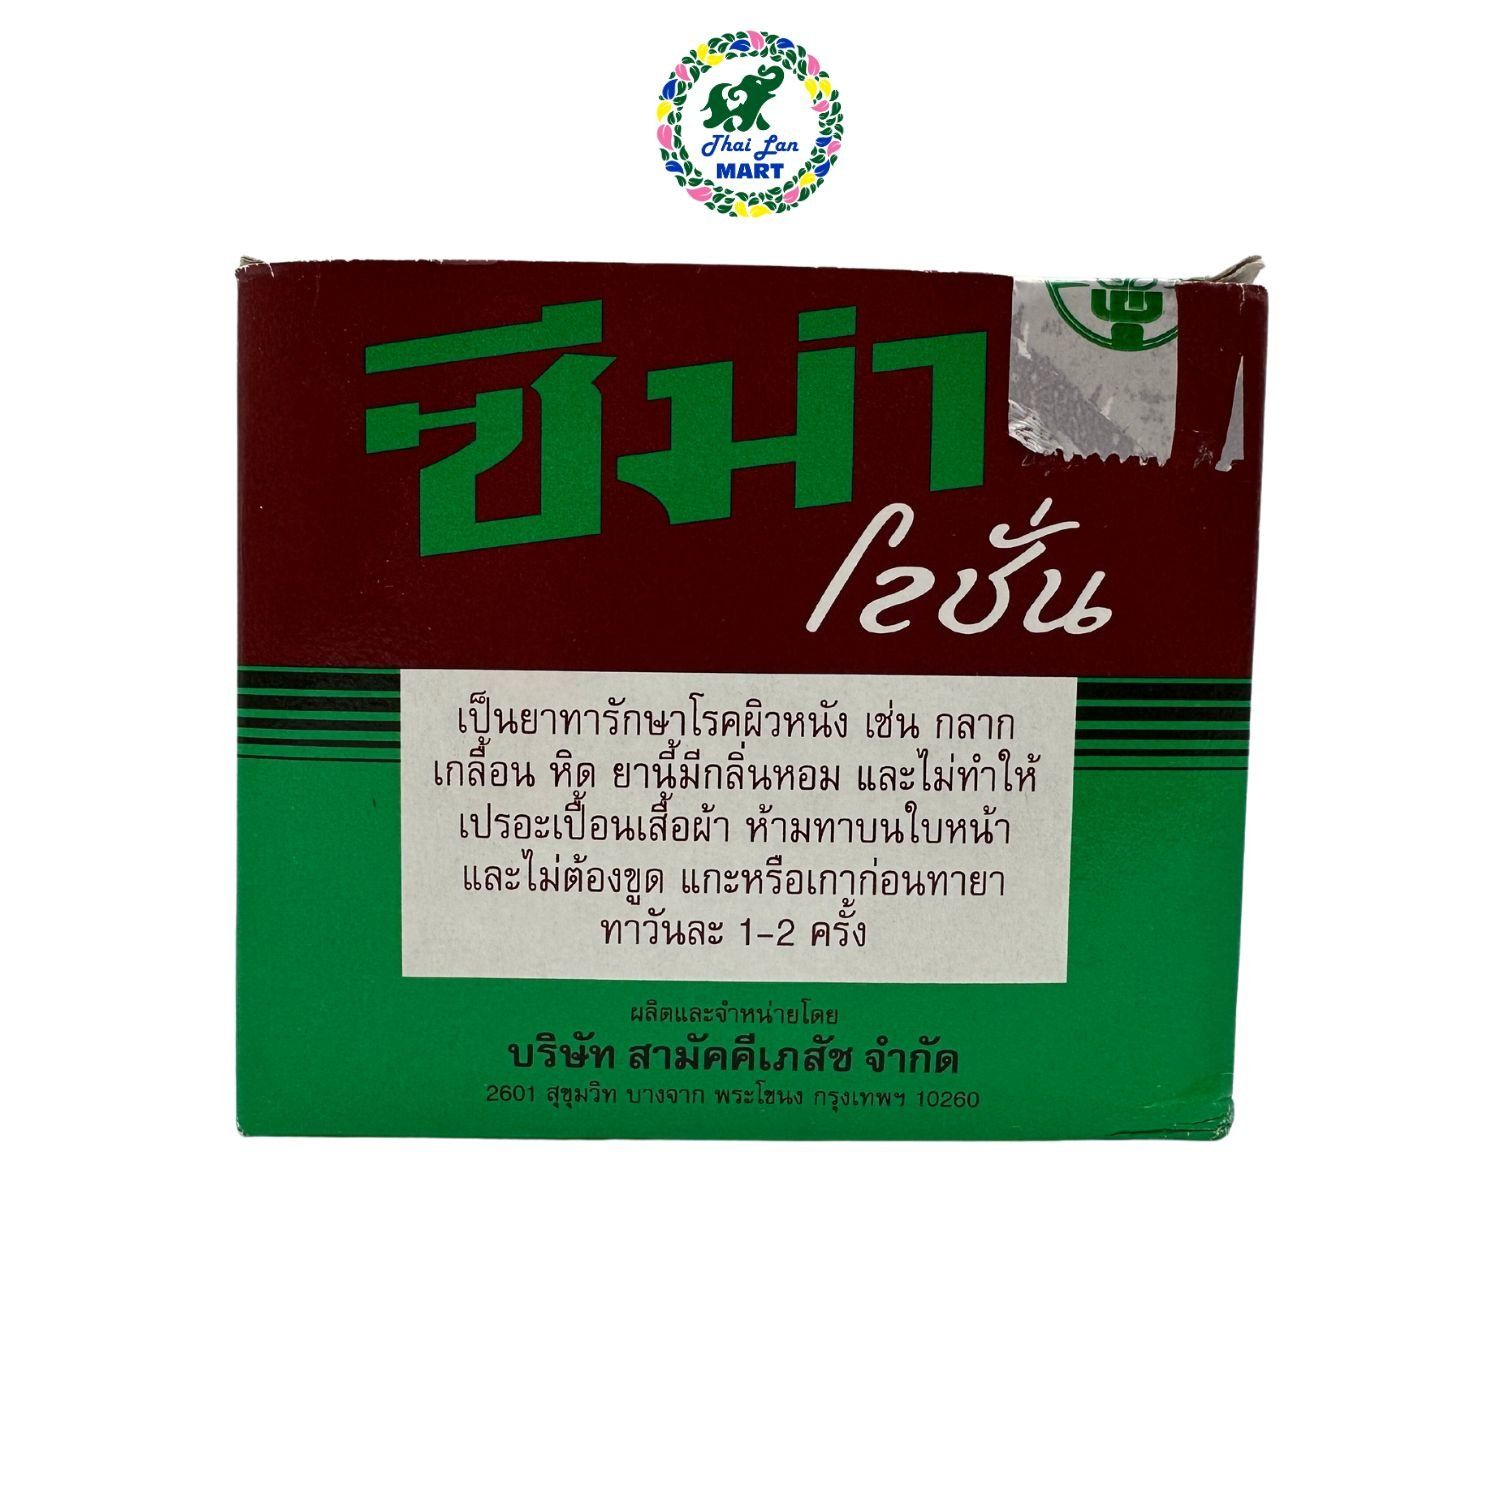  Dầu zema lotion giúp giảm ngứa vẩy nến viêm da hàng nội địa chính hãng thái lan 